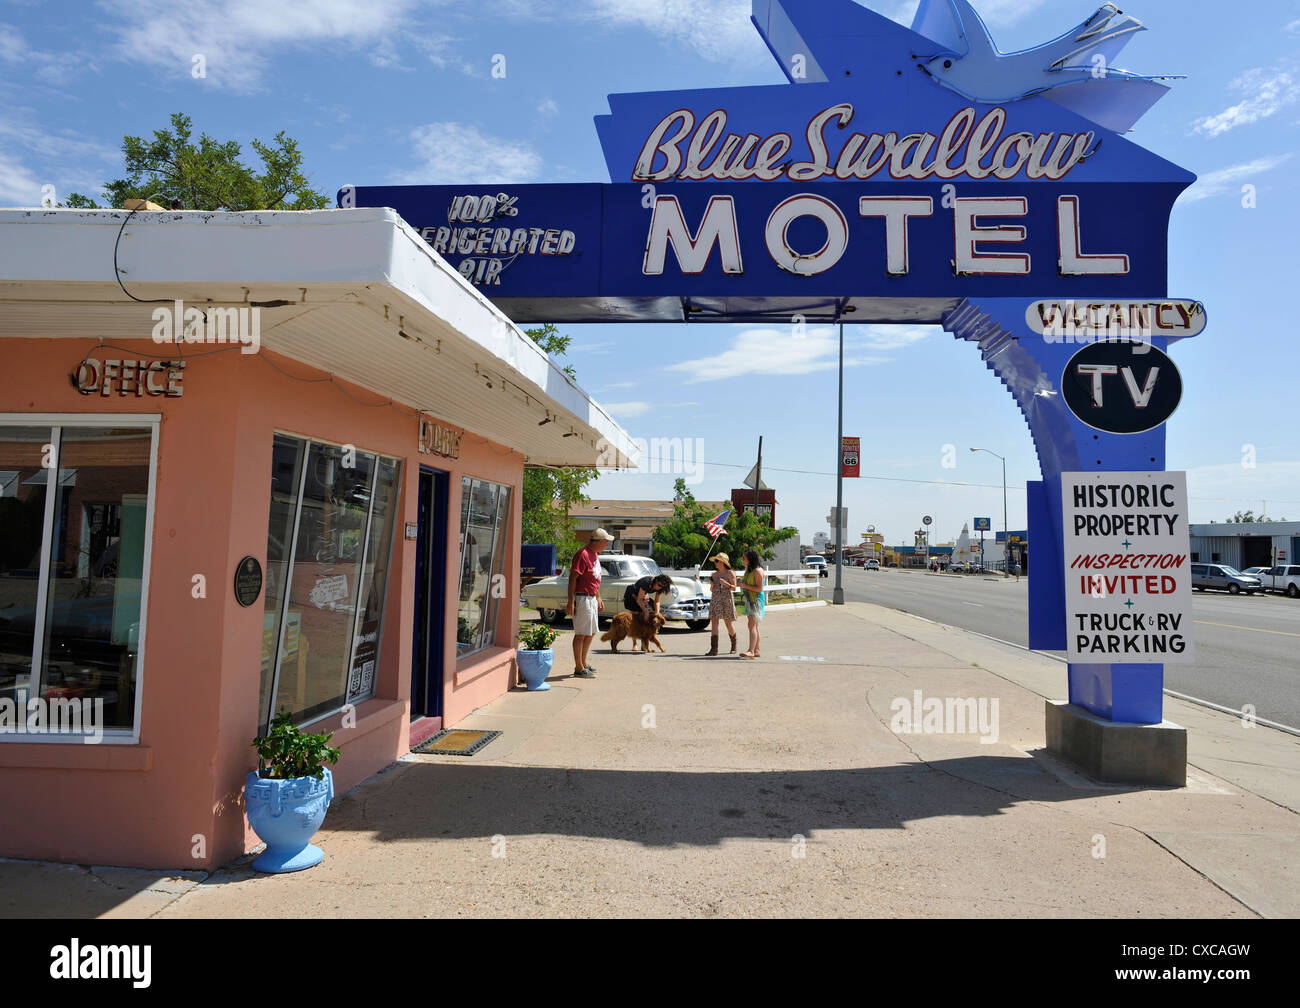 Le légendaire Blue Swallow Motel, Route 66, Tucumcari Nouveau Mexique Banque D'Images